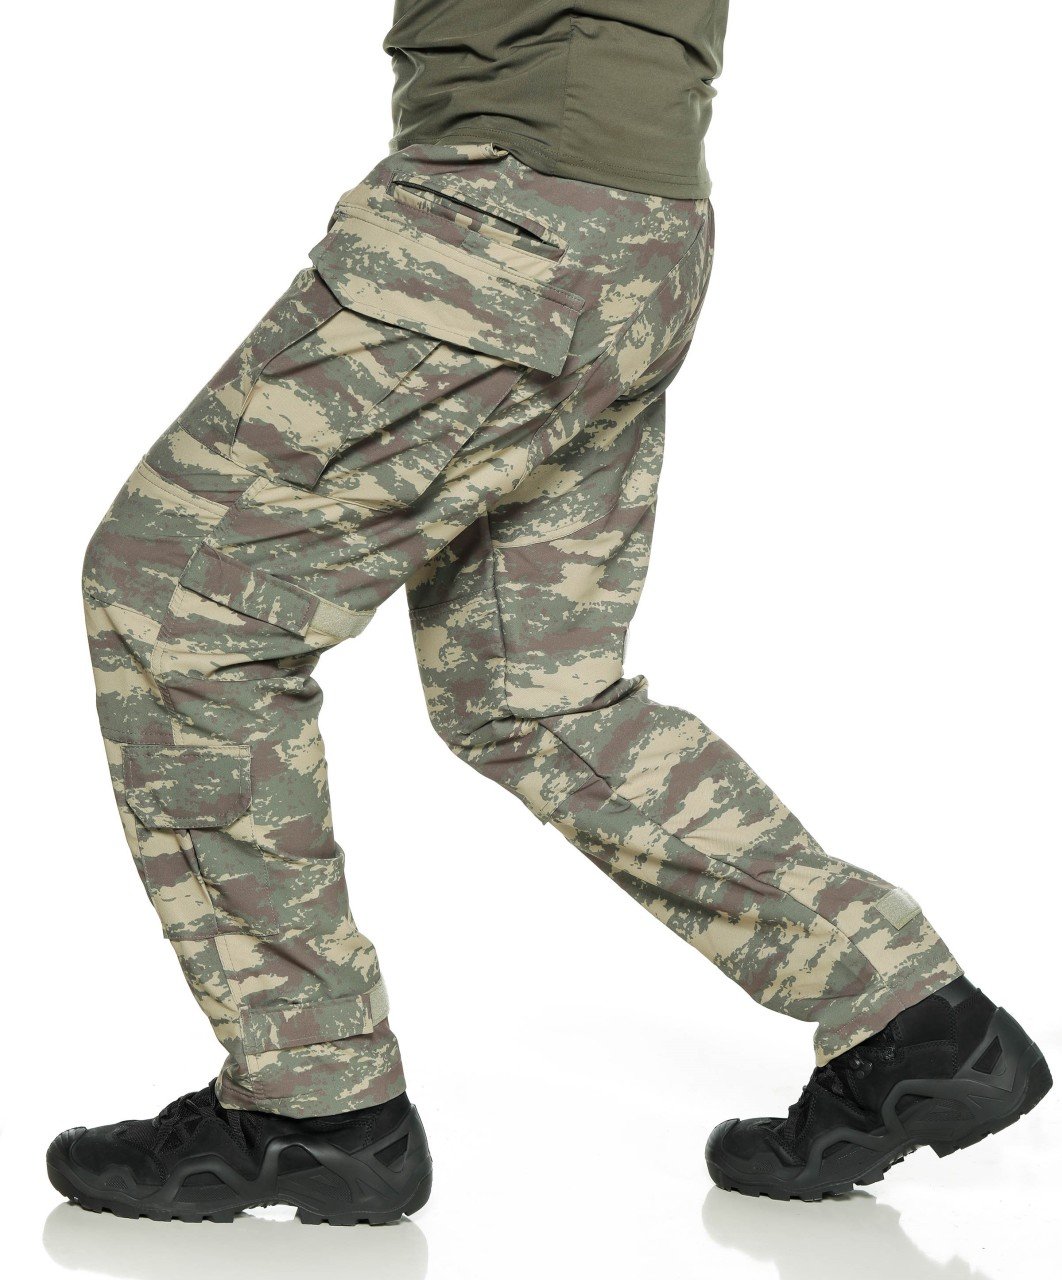 Single Sword Likralı TSK Komando Tactical Kargo Pantolon